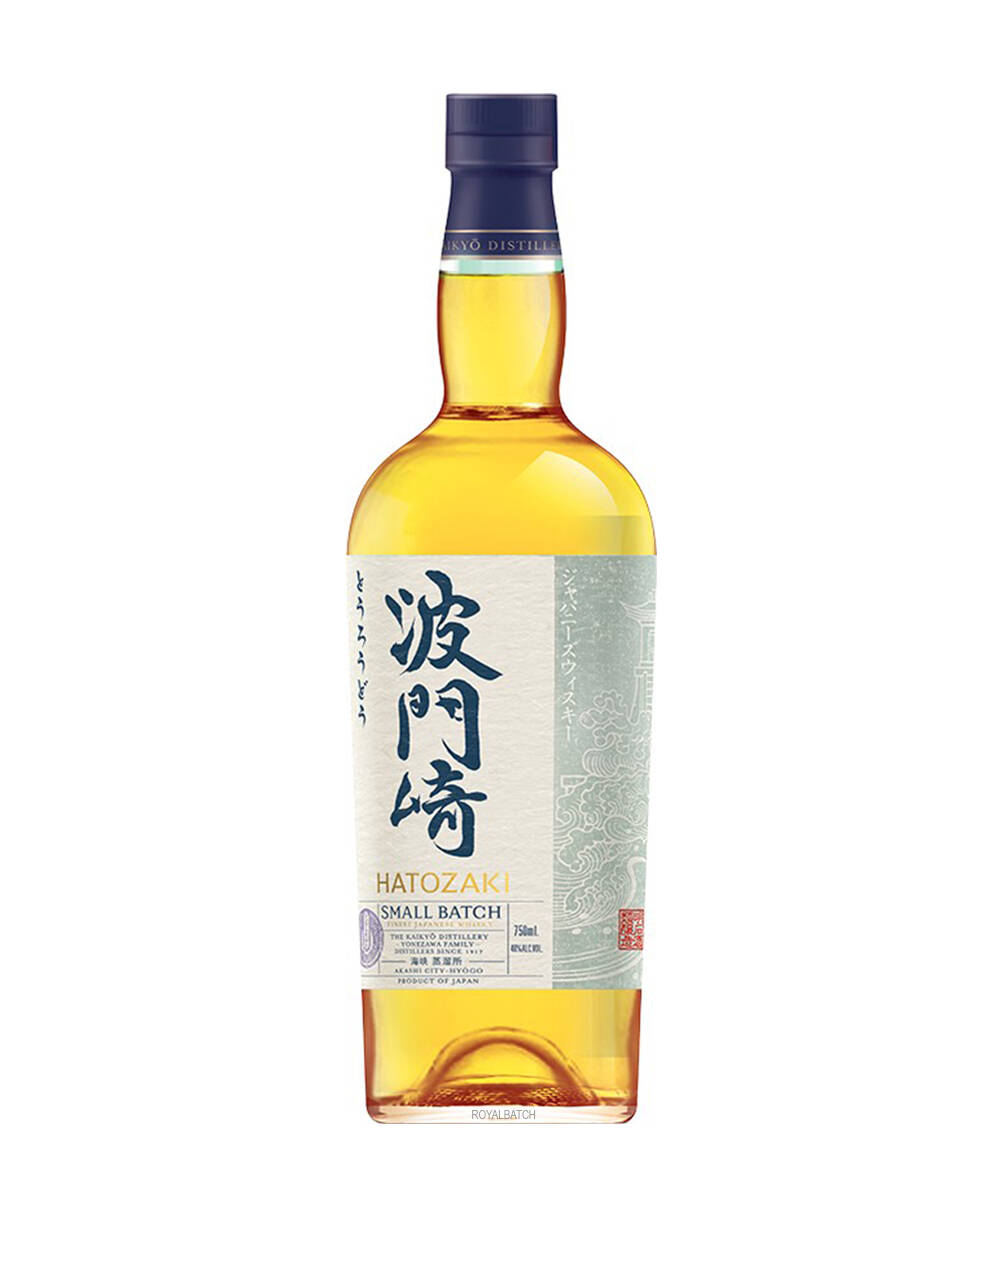 Whisky Japonais Hatozaki - Malt - 46°